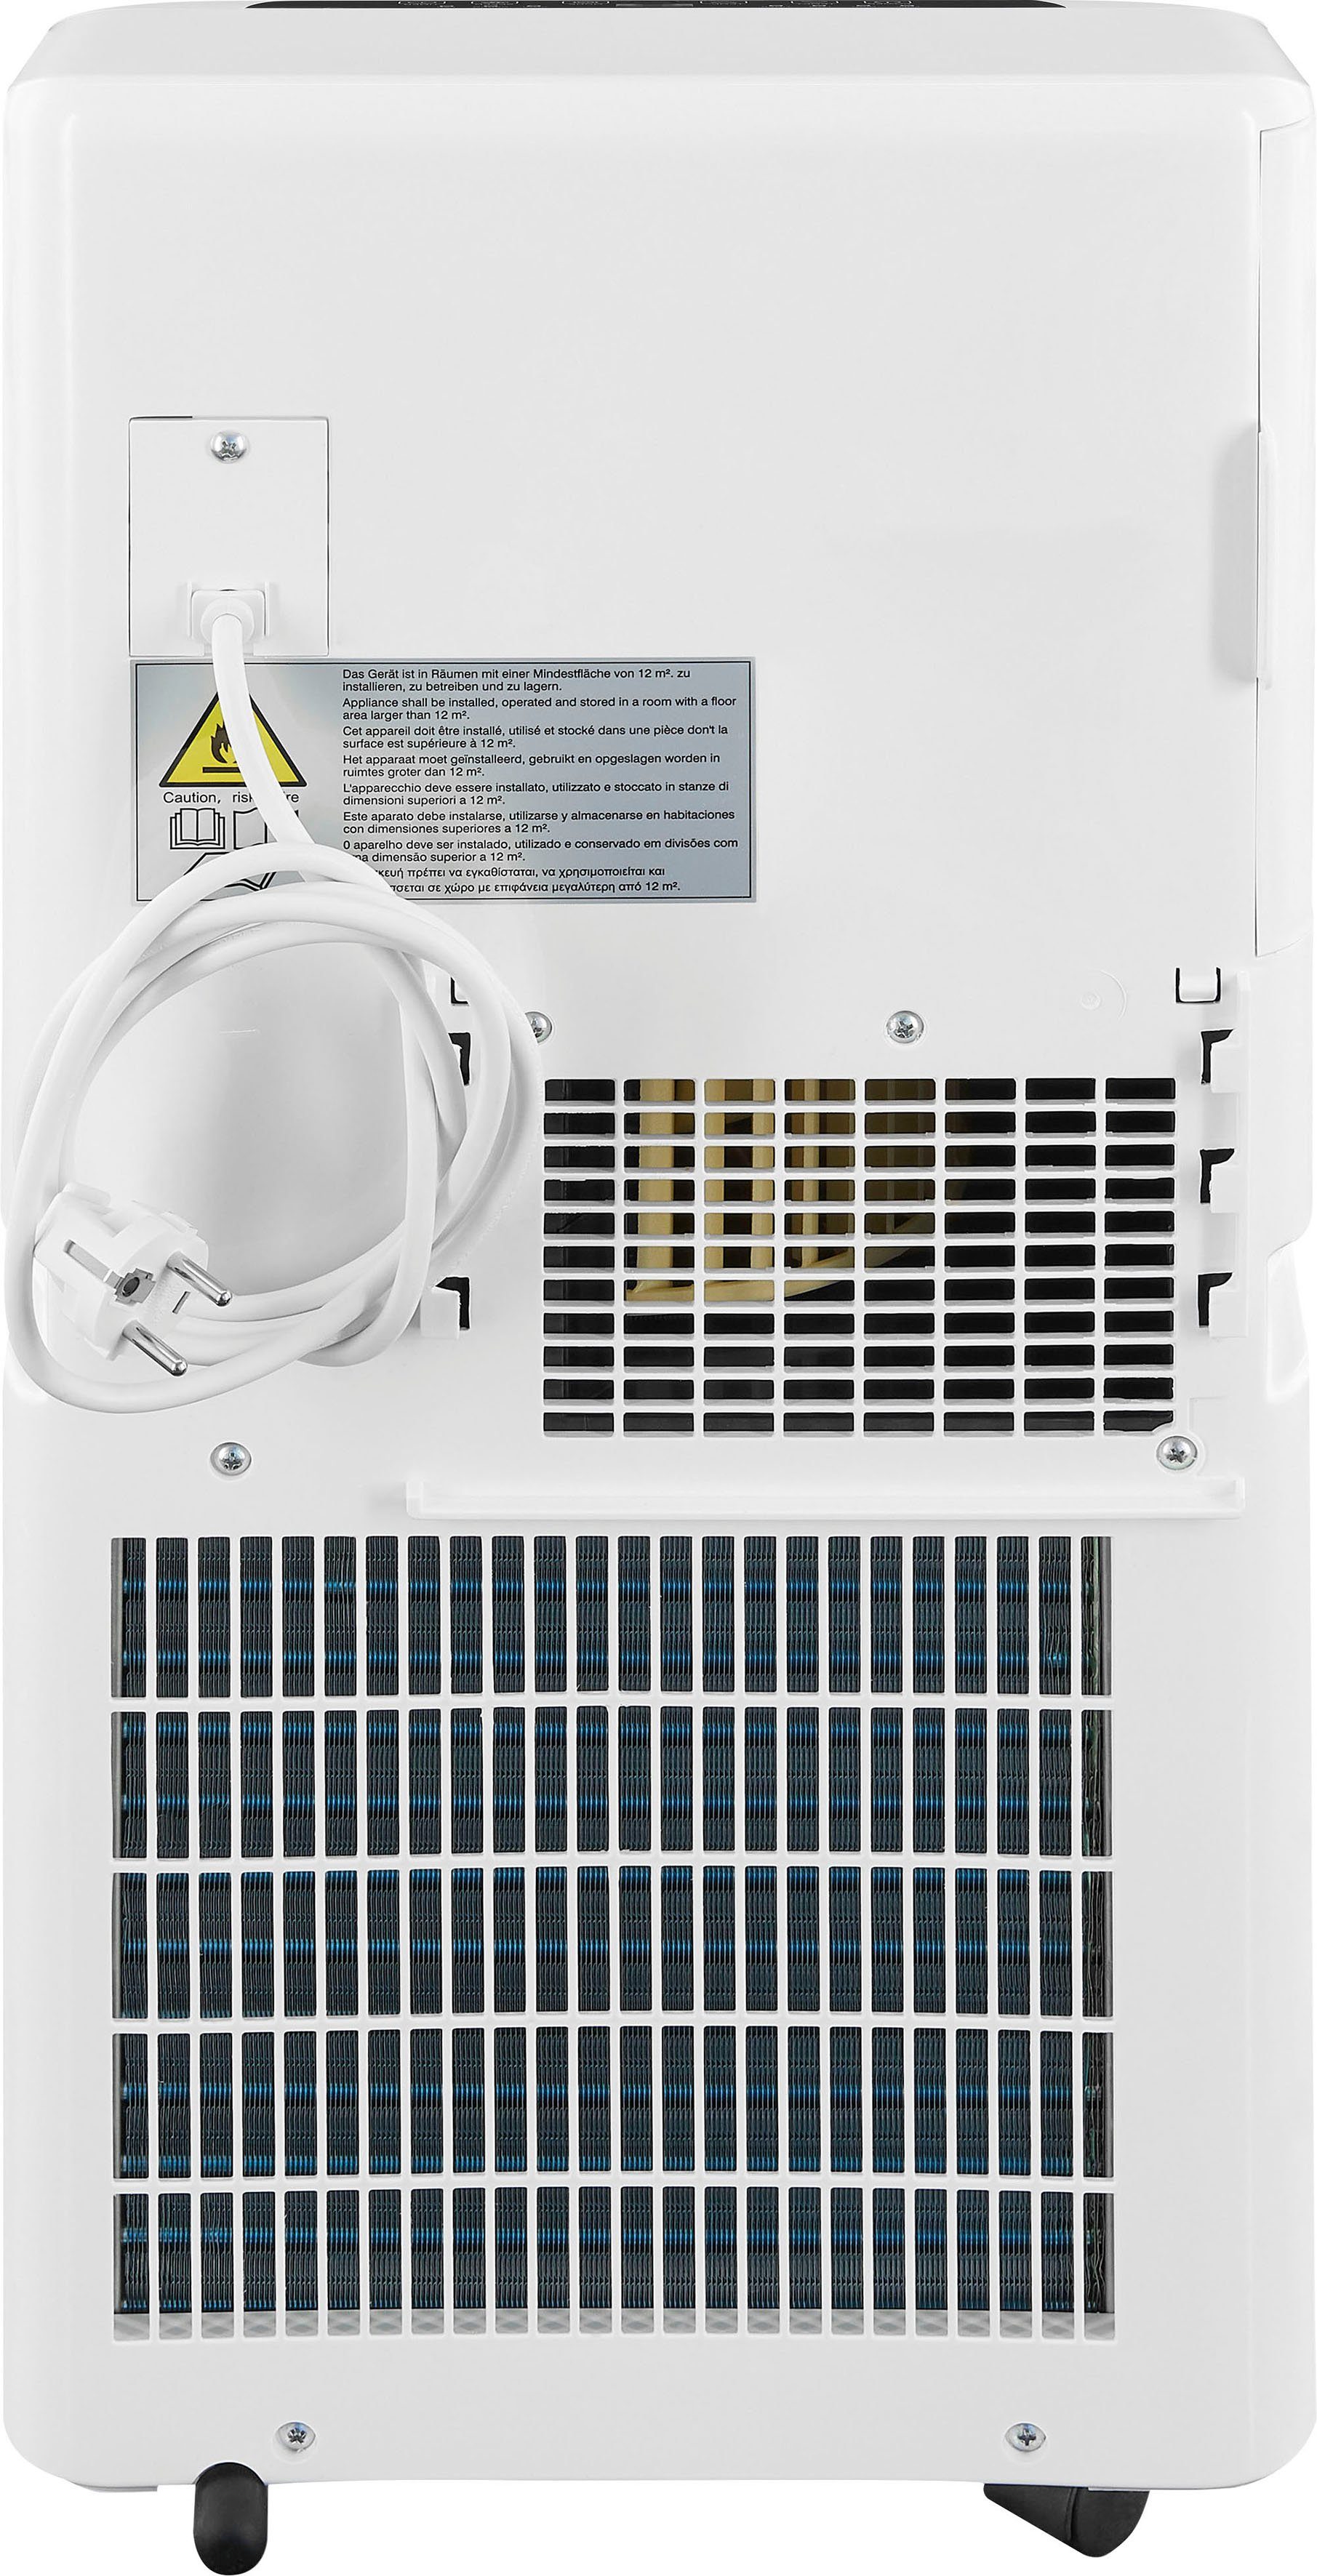 CM 20 geeignet m² Ventilation, we, Entfeuchtung für 30752 - exquisit 3-in-1-Klimagerät Luftkühlung Räume -